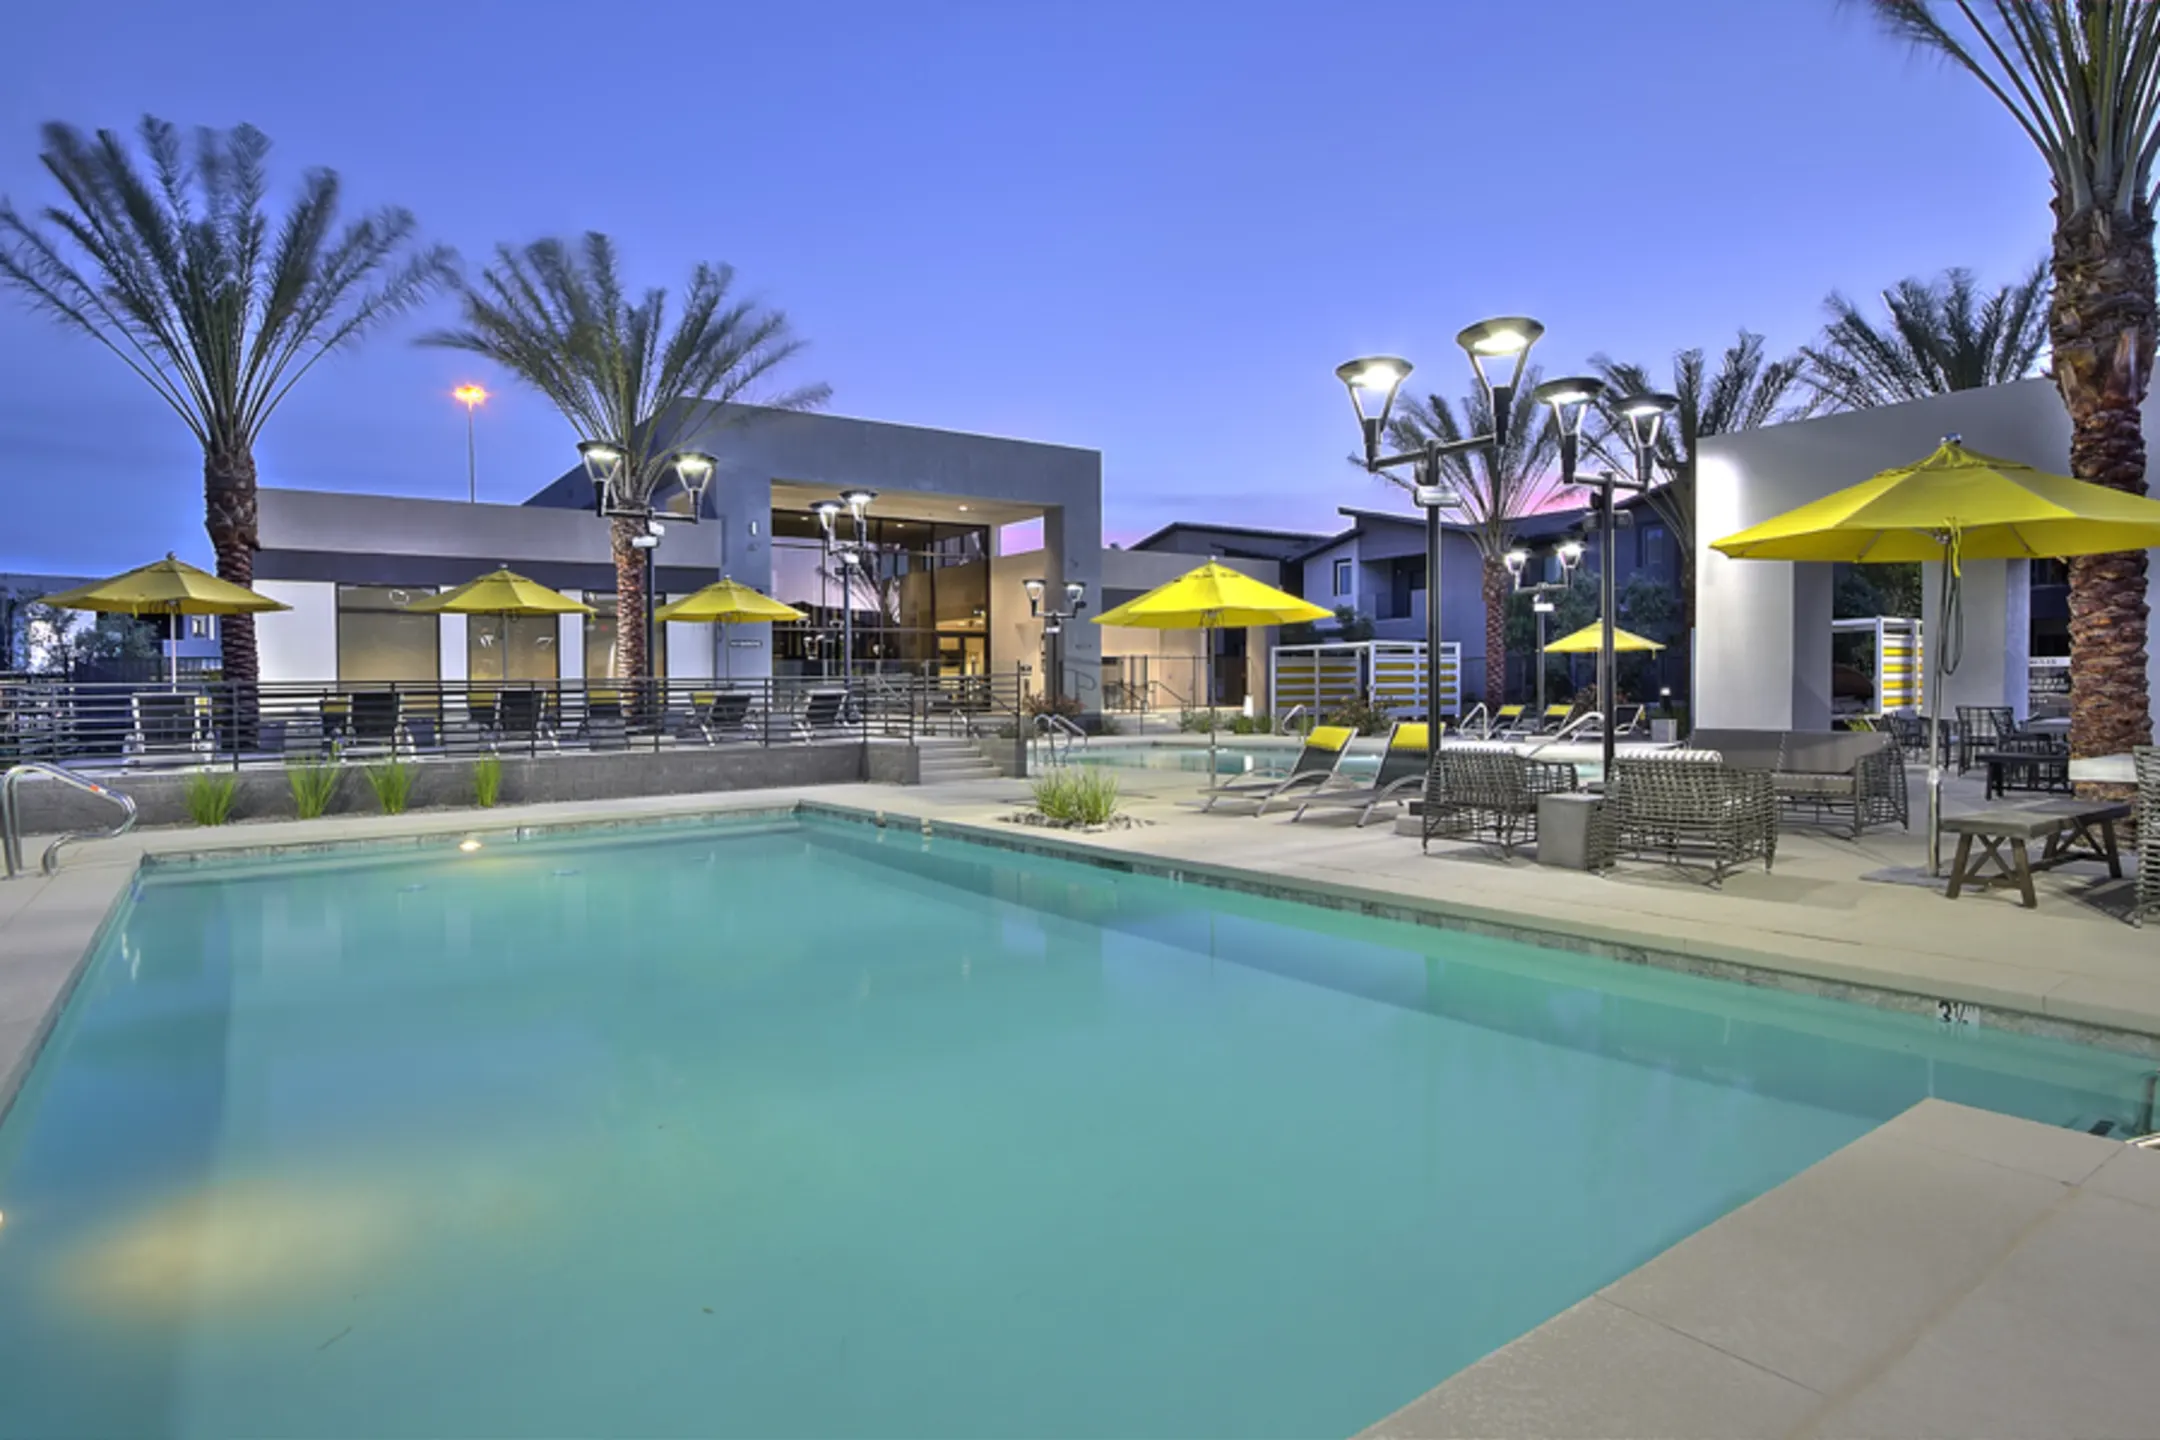 Pool - 2One5 Apartment Homes - Las Vegas, NV